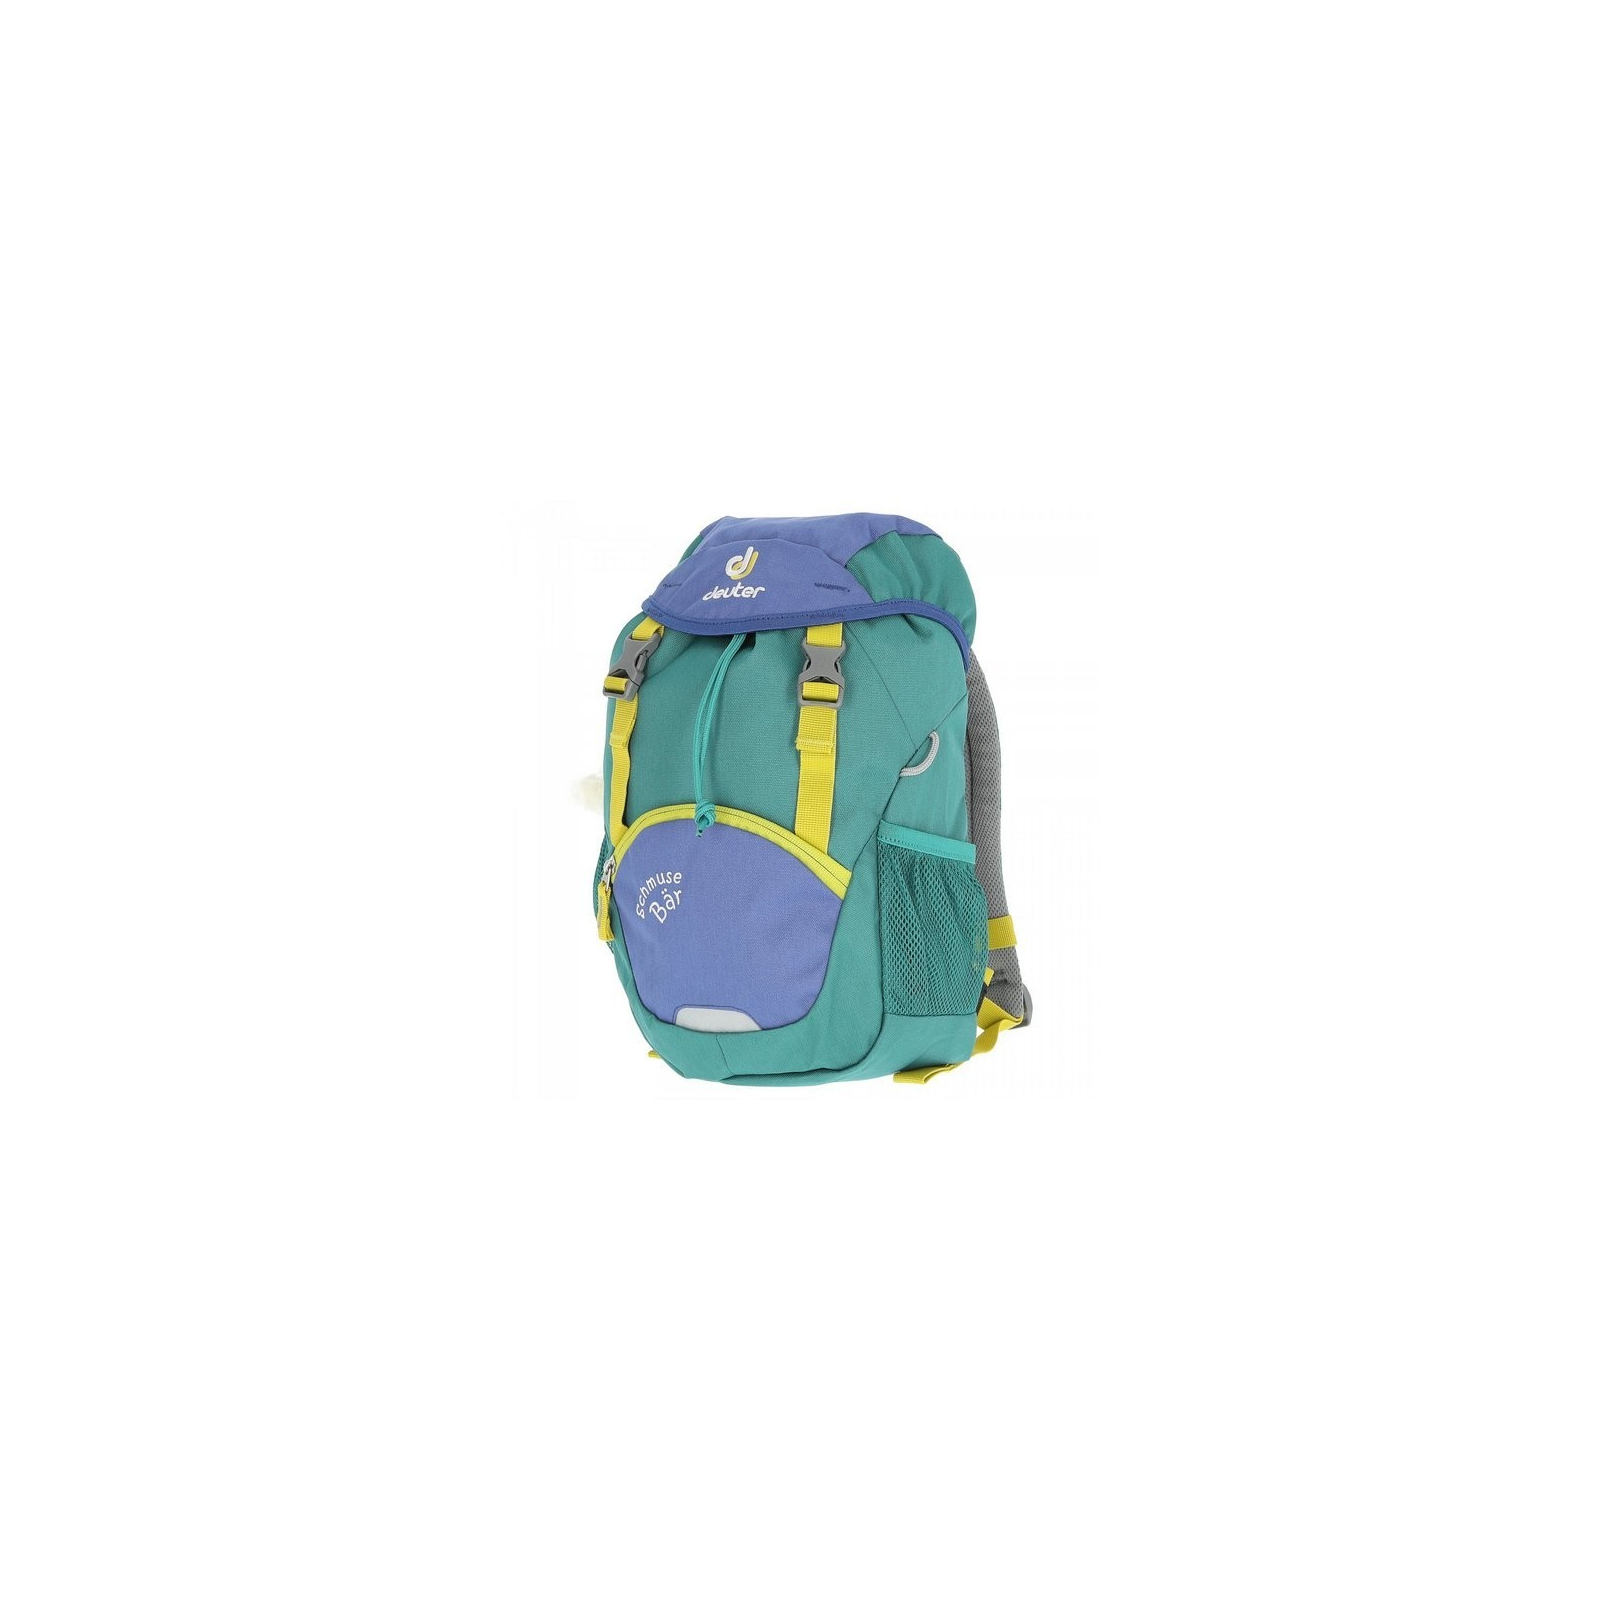 Рюкзак школьный Deuter Schmusebar 3232 indigo-alpinegreen (3612017 3232) изображение 5